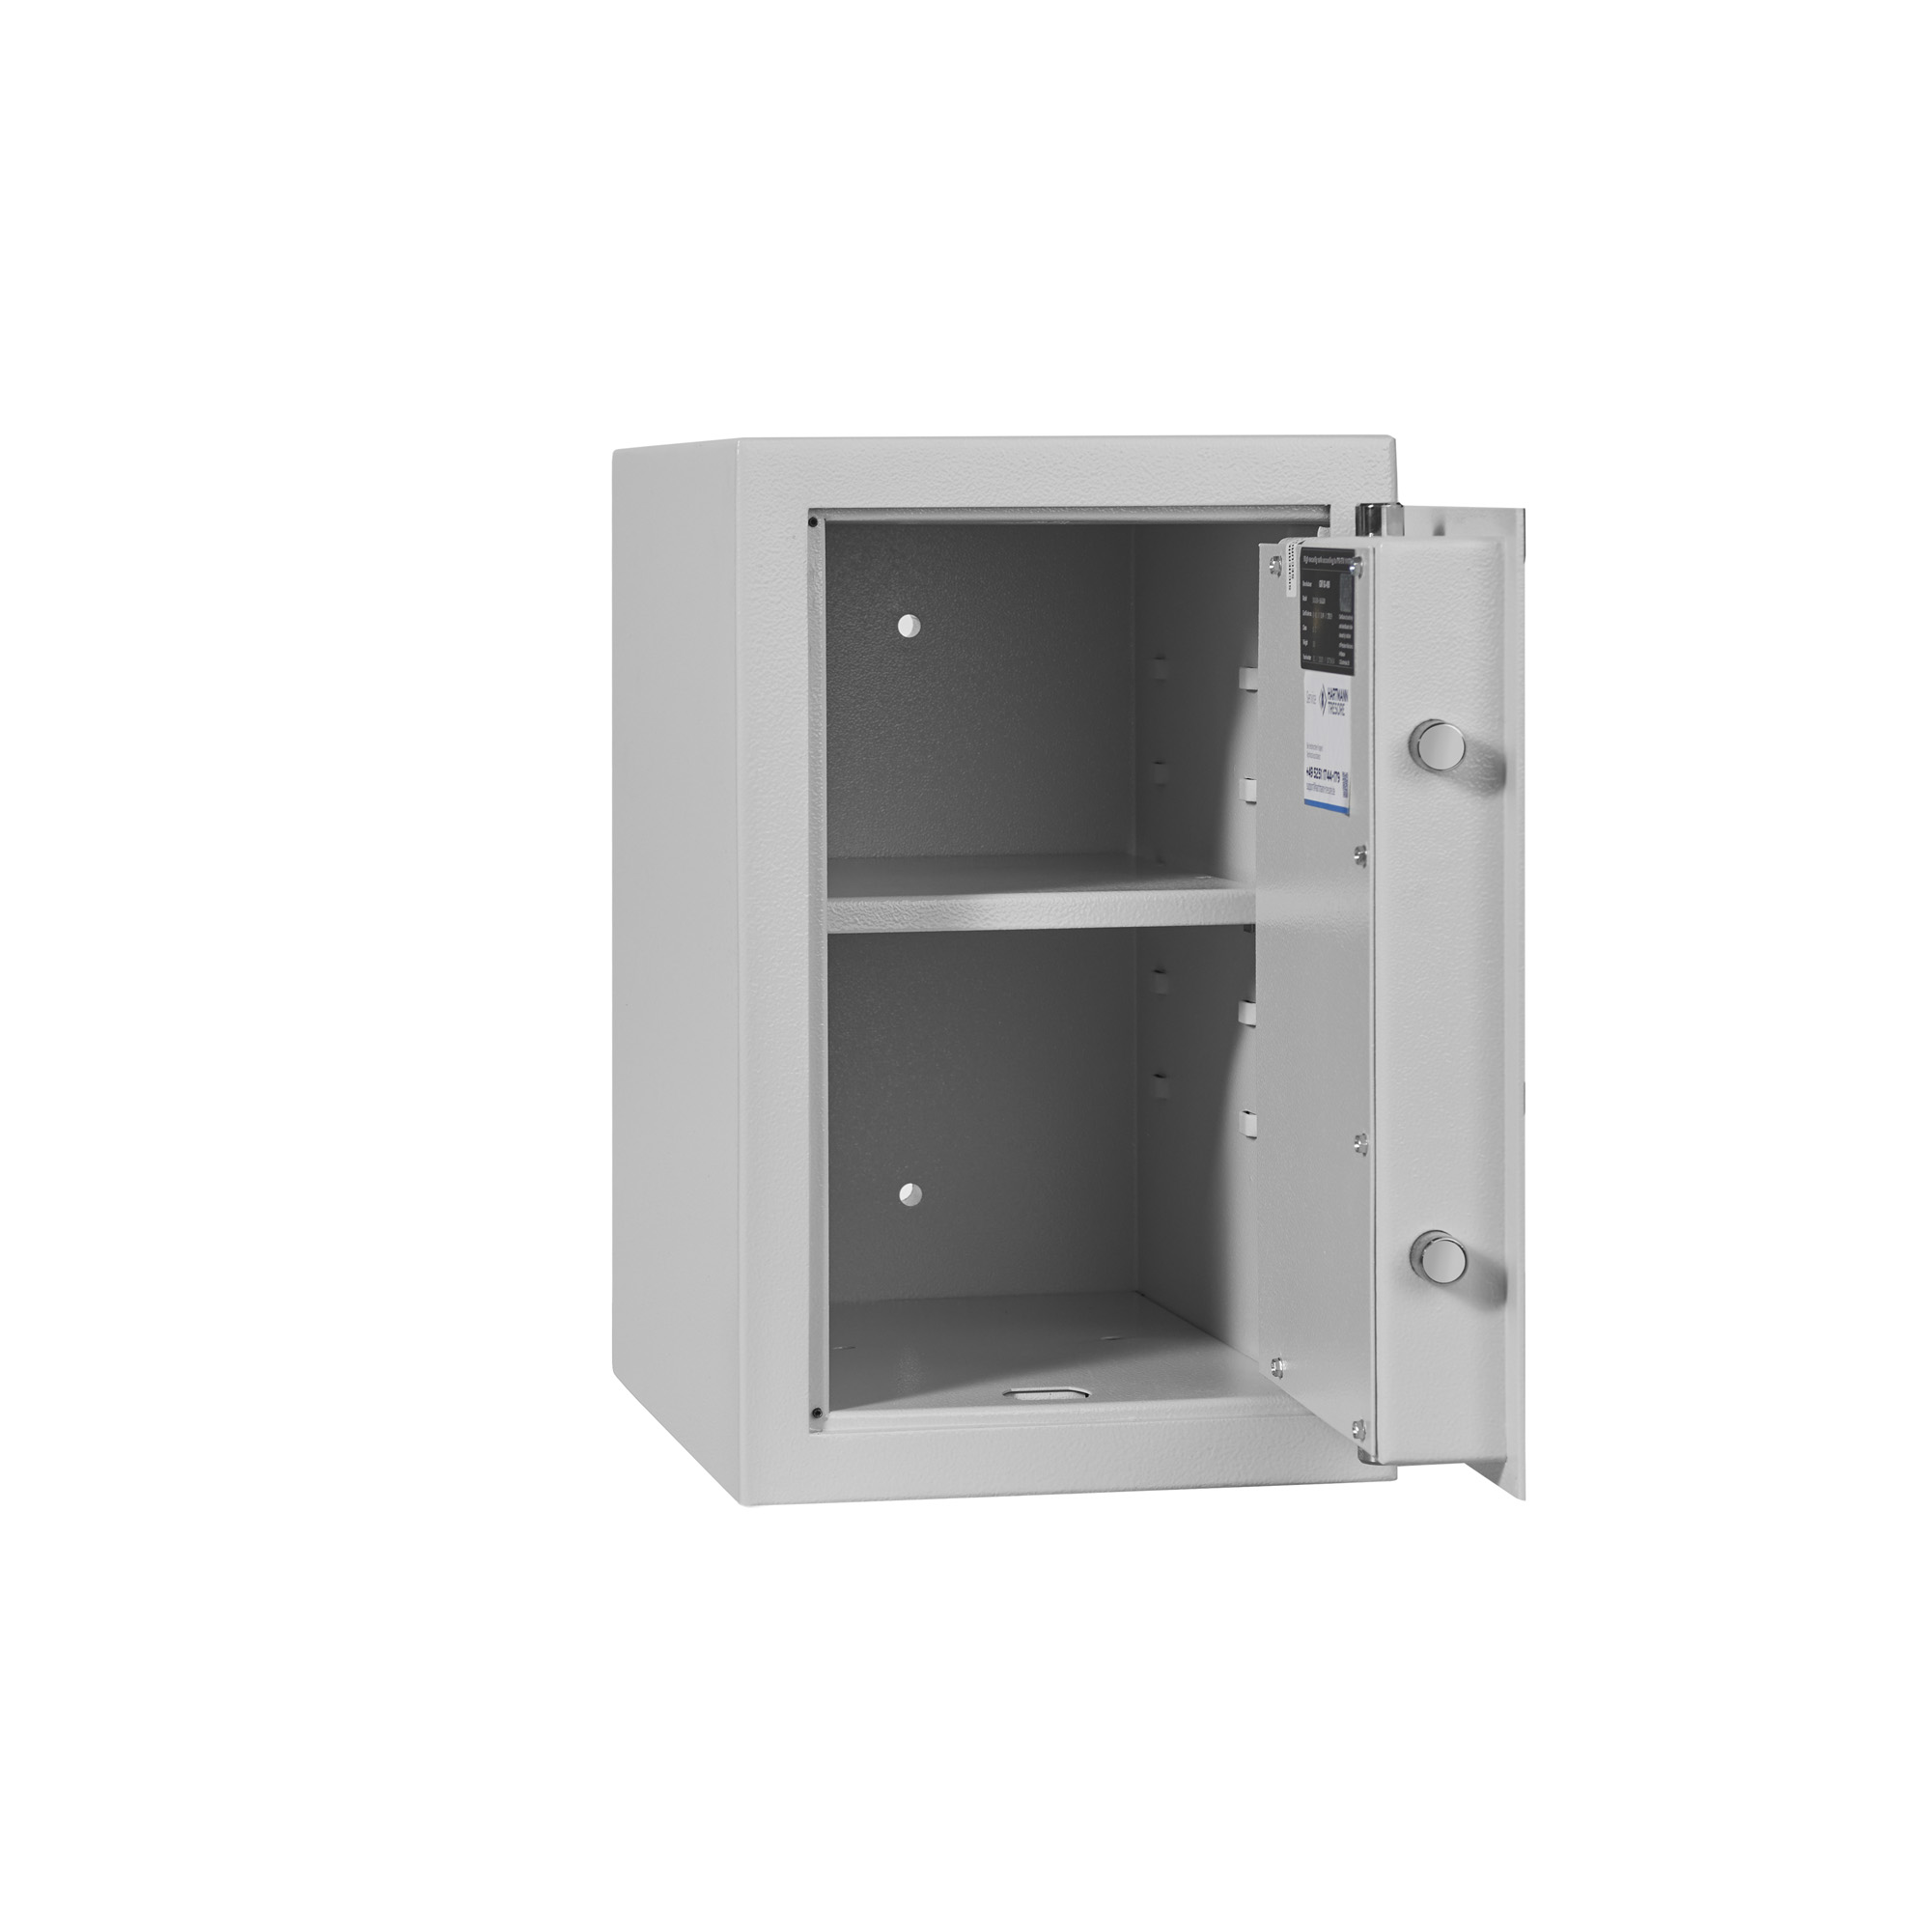 HPKT 400-01 Small safe - Burglar-proof furniture safe - Furniture safe